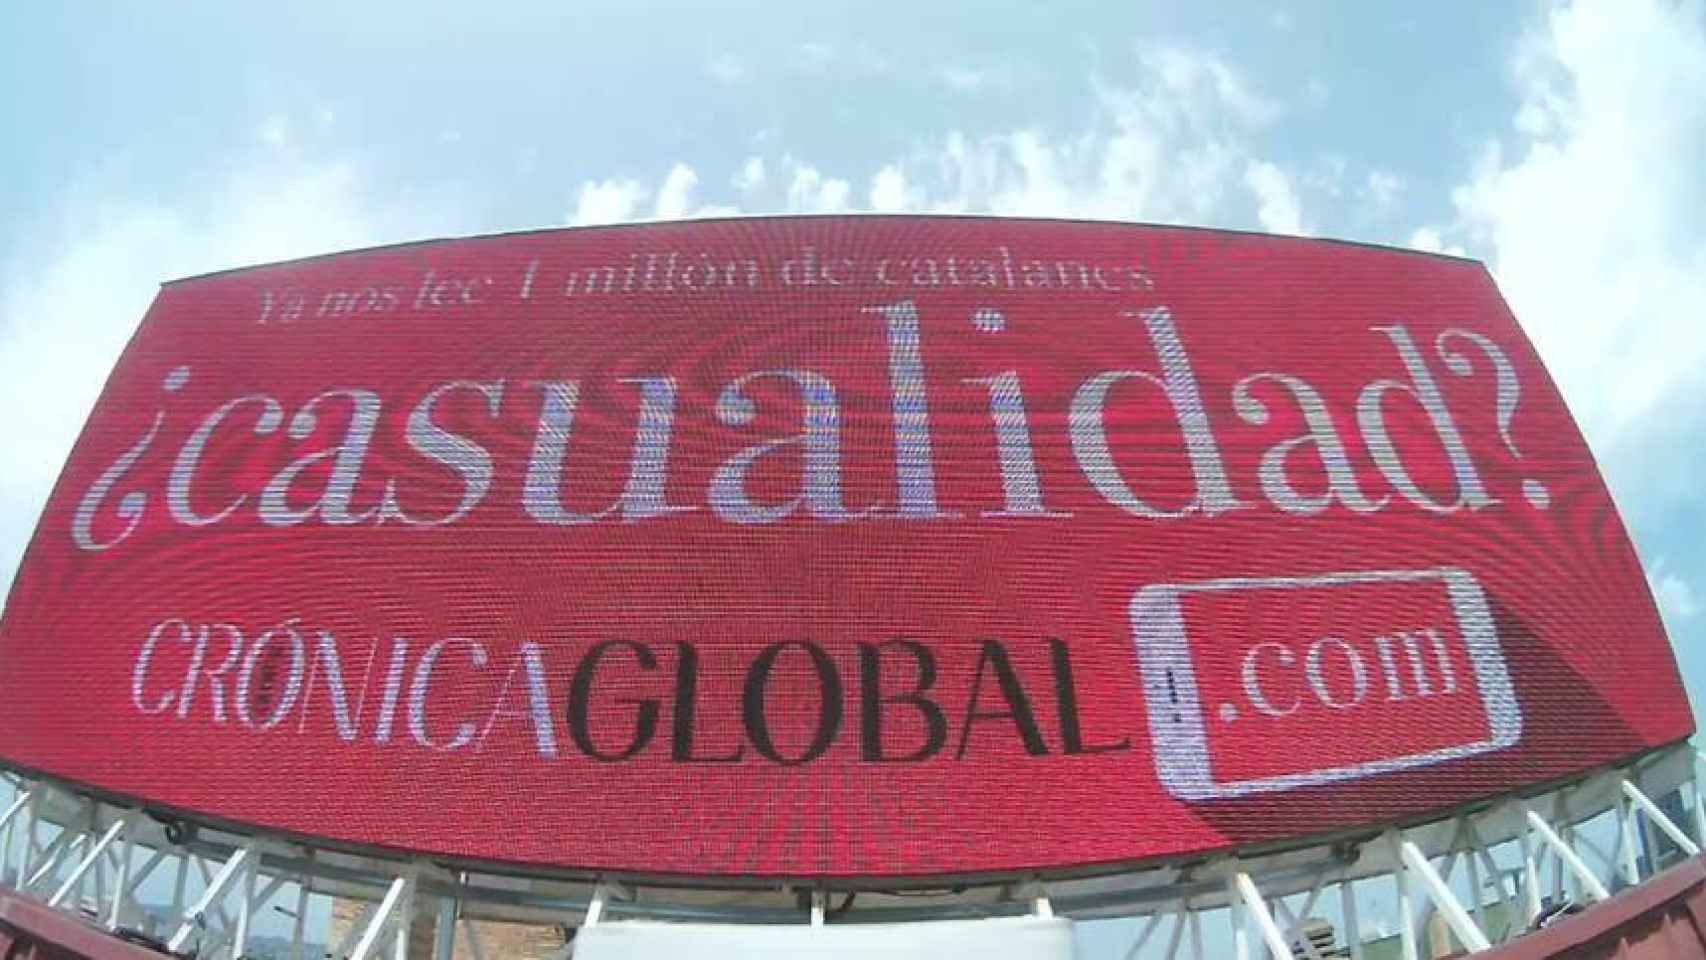 Captura de la campaña de Crónica Global en una pantalla al exterior.